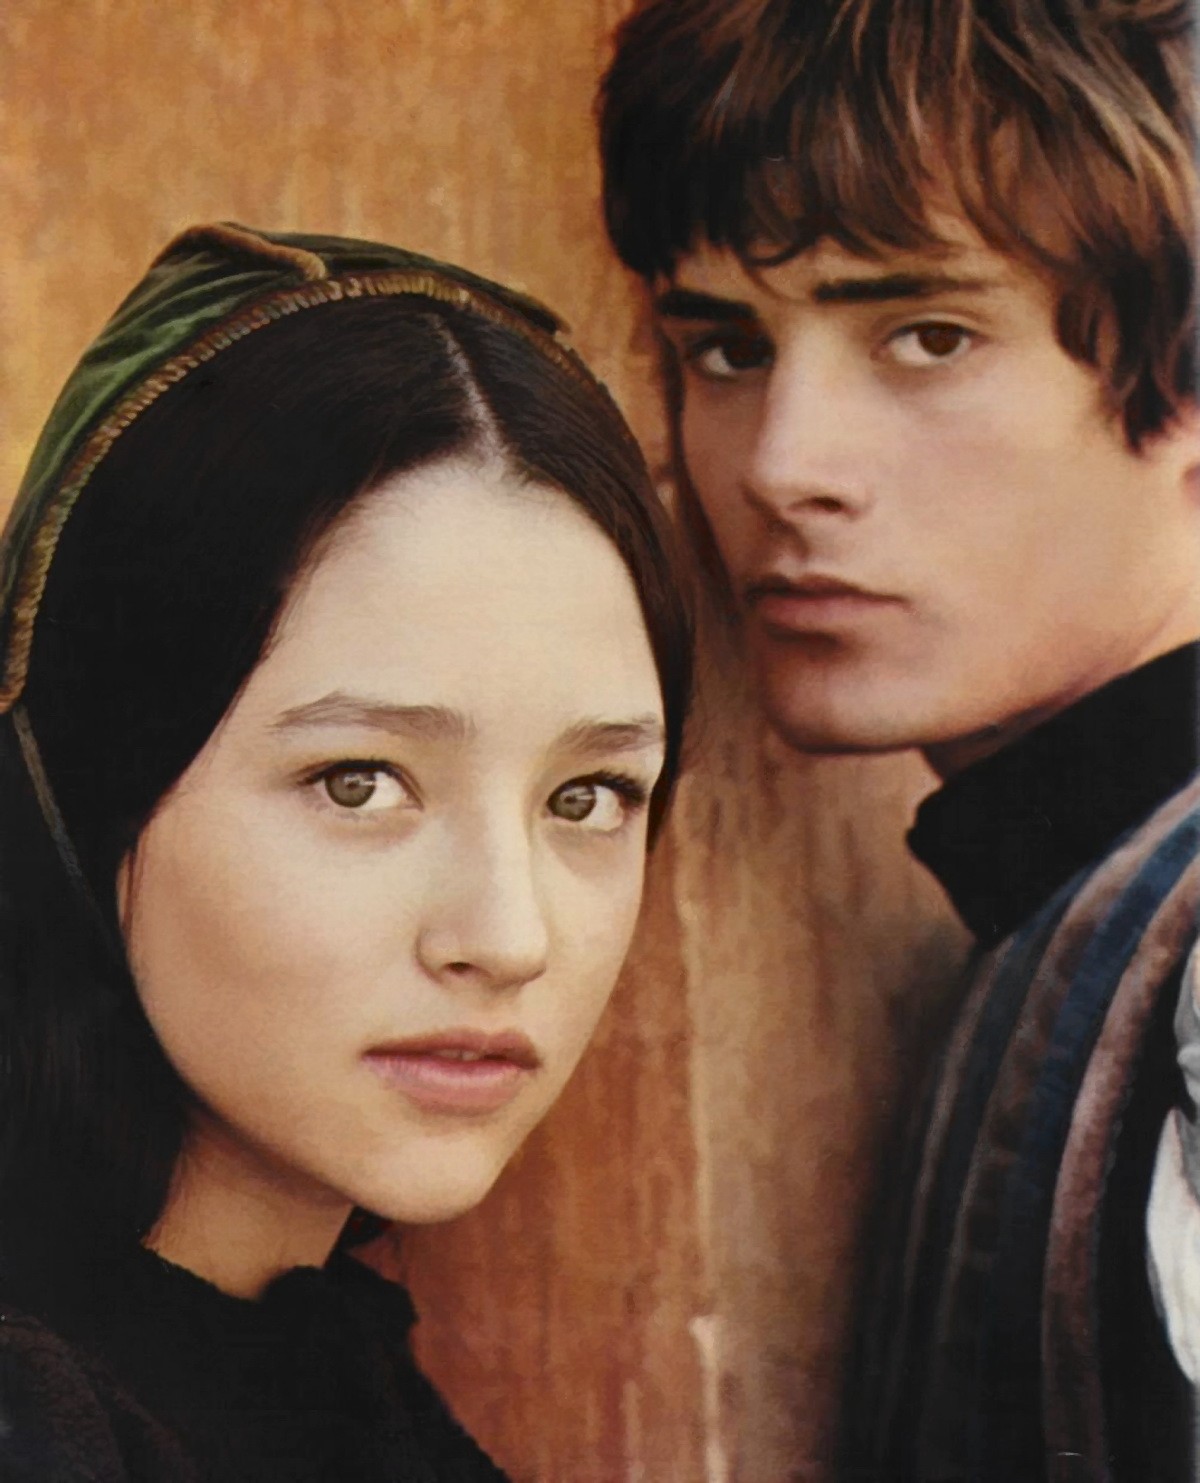 Ромео и Джульетта: кадр из фильма - Оливия Хасси и Леонард Уайтинг